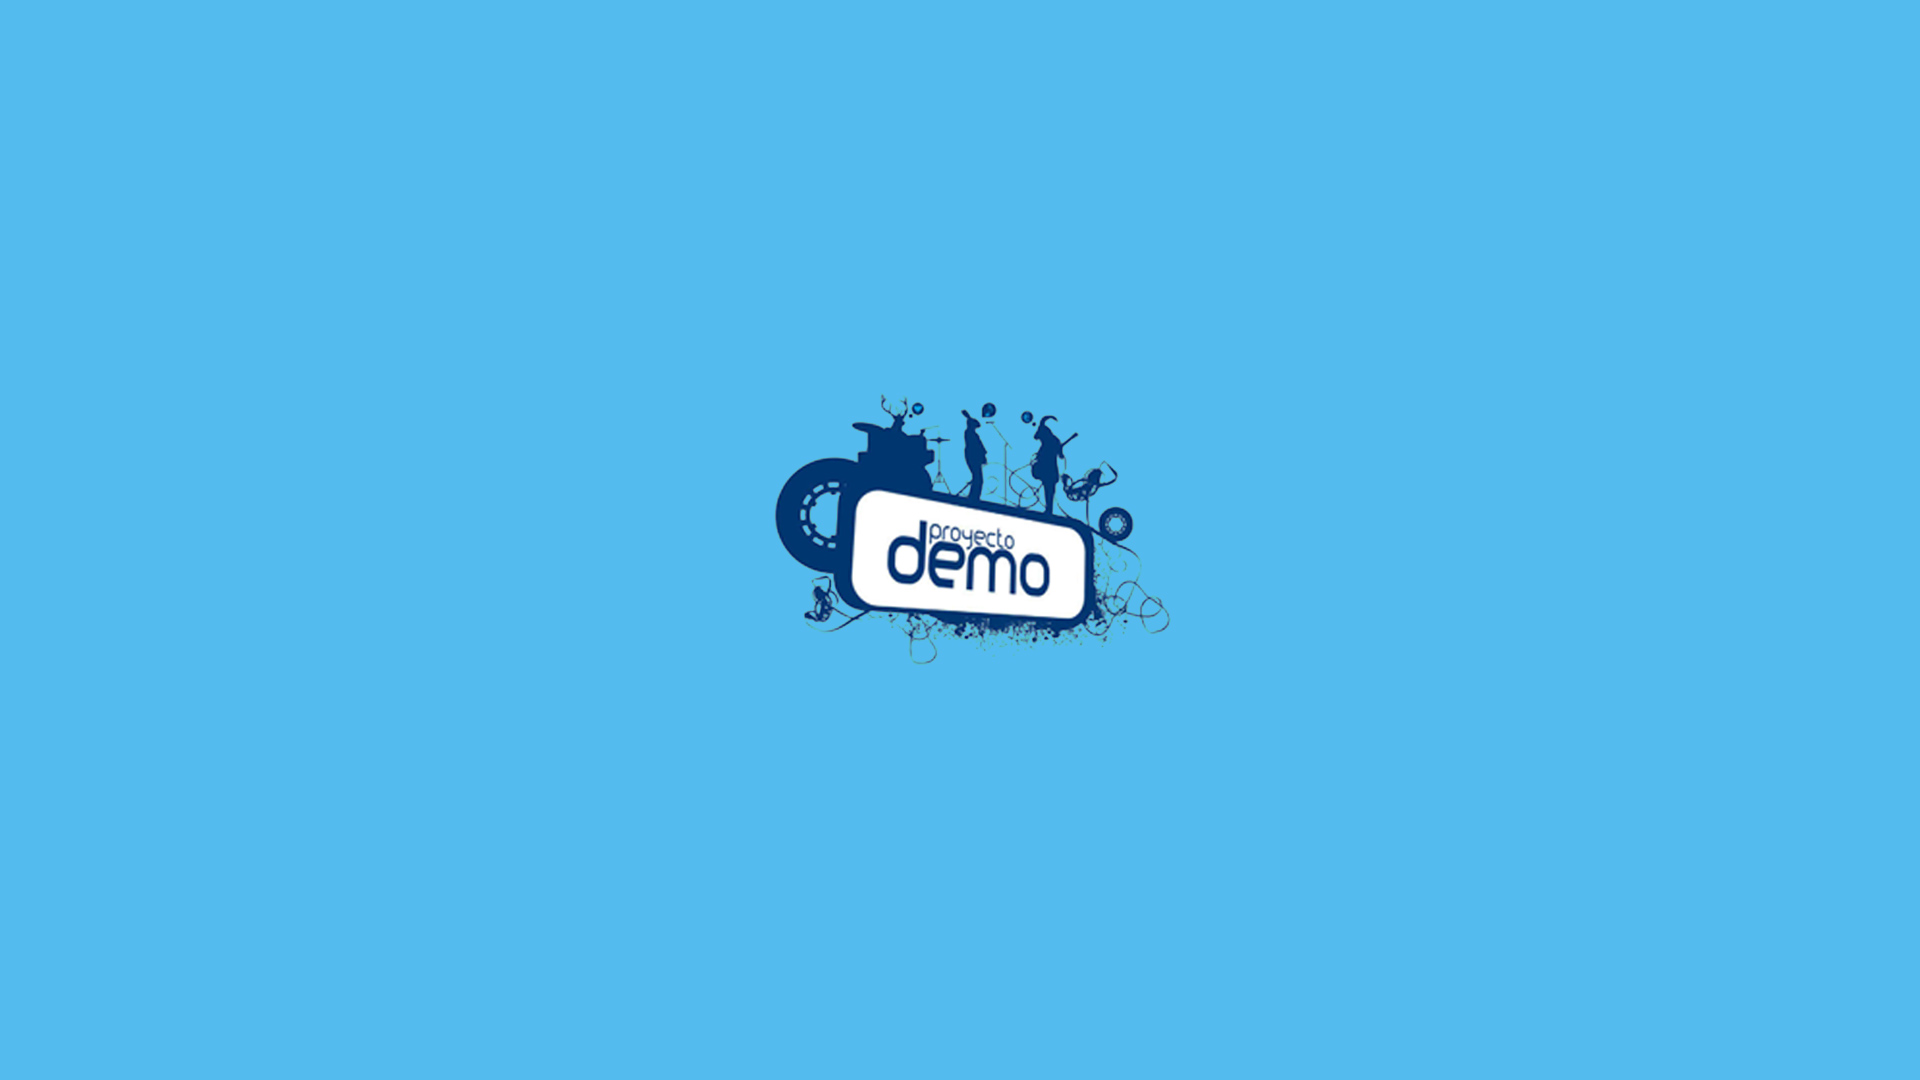 Proyecto Demo, web hecha por murciègalo entre 2001 y 2013